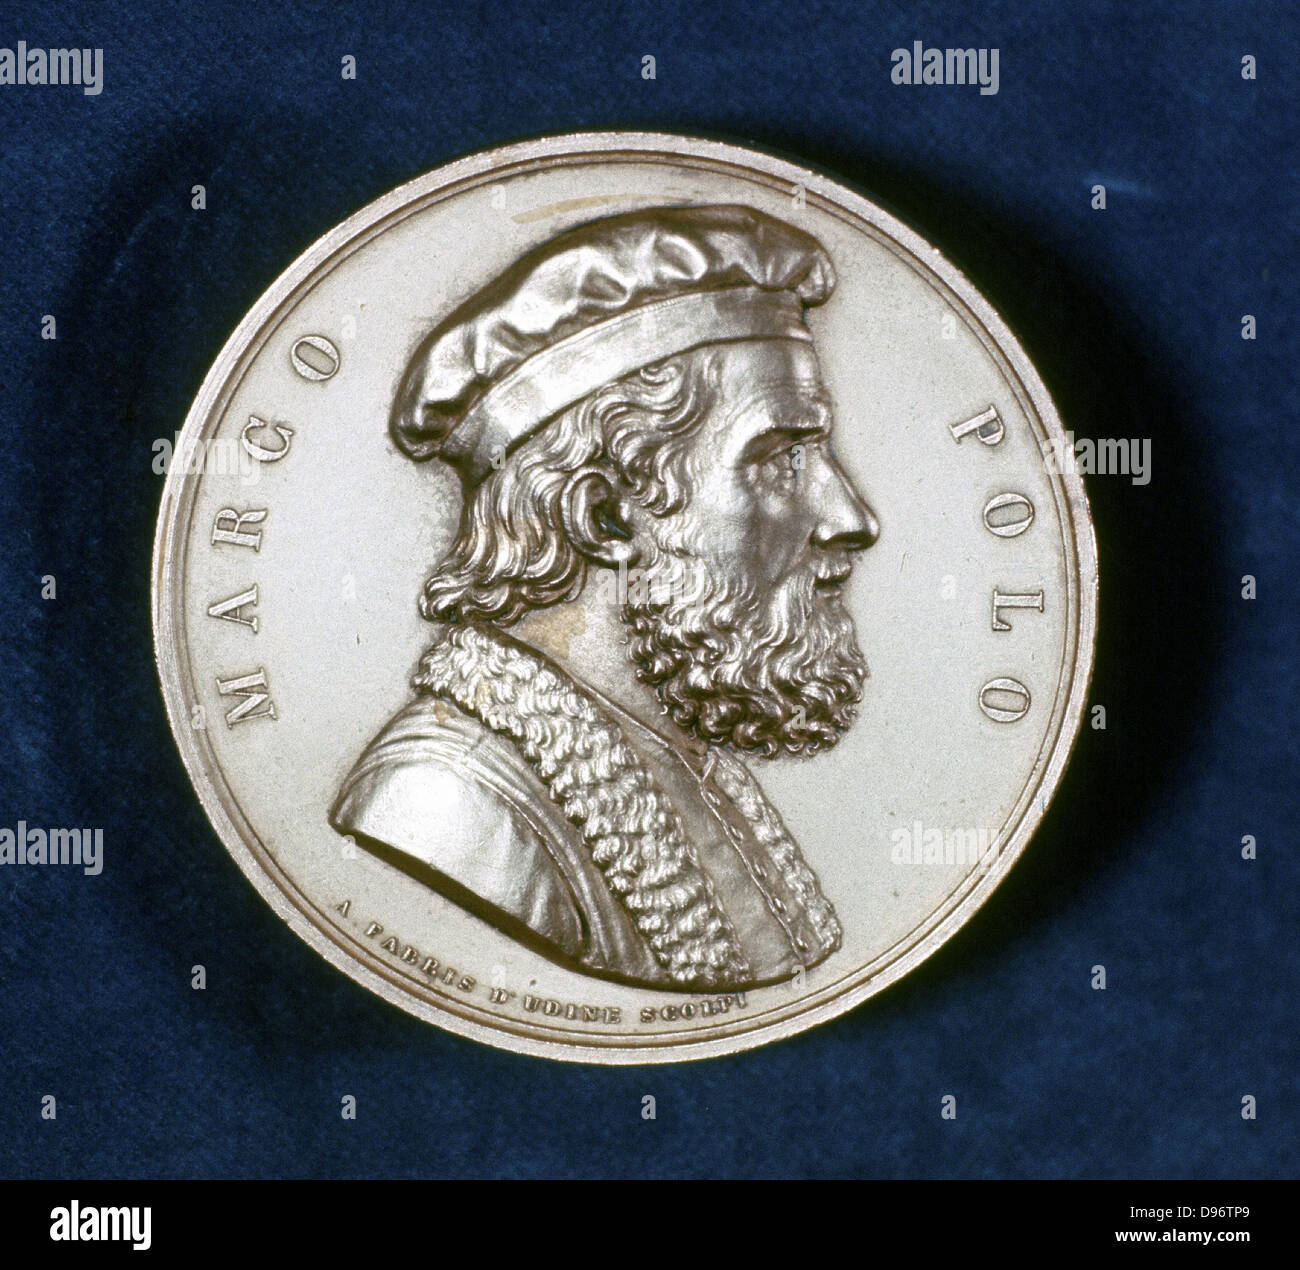 Marco Polo (1254-1324) voyageur vénitien et marchand. Portrait de l'avers de la médaille commémorative. Banque D'Images